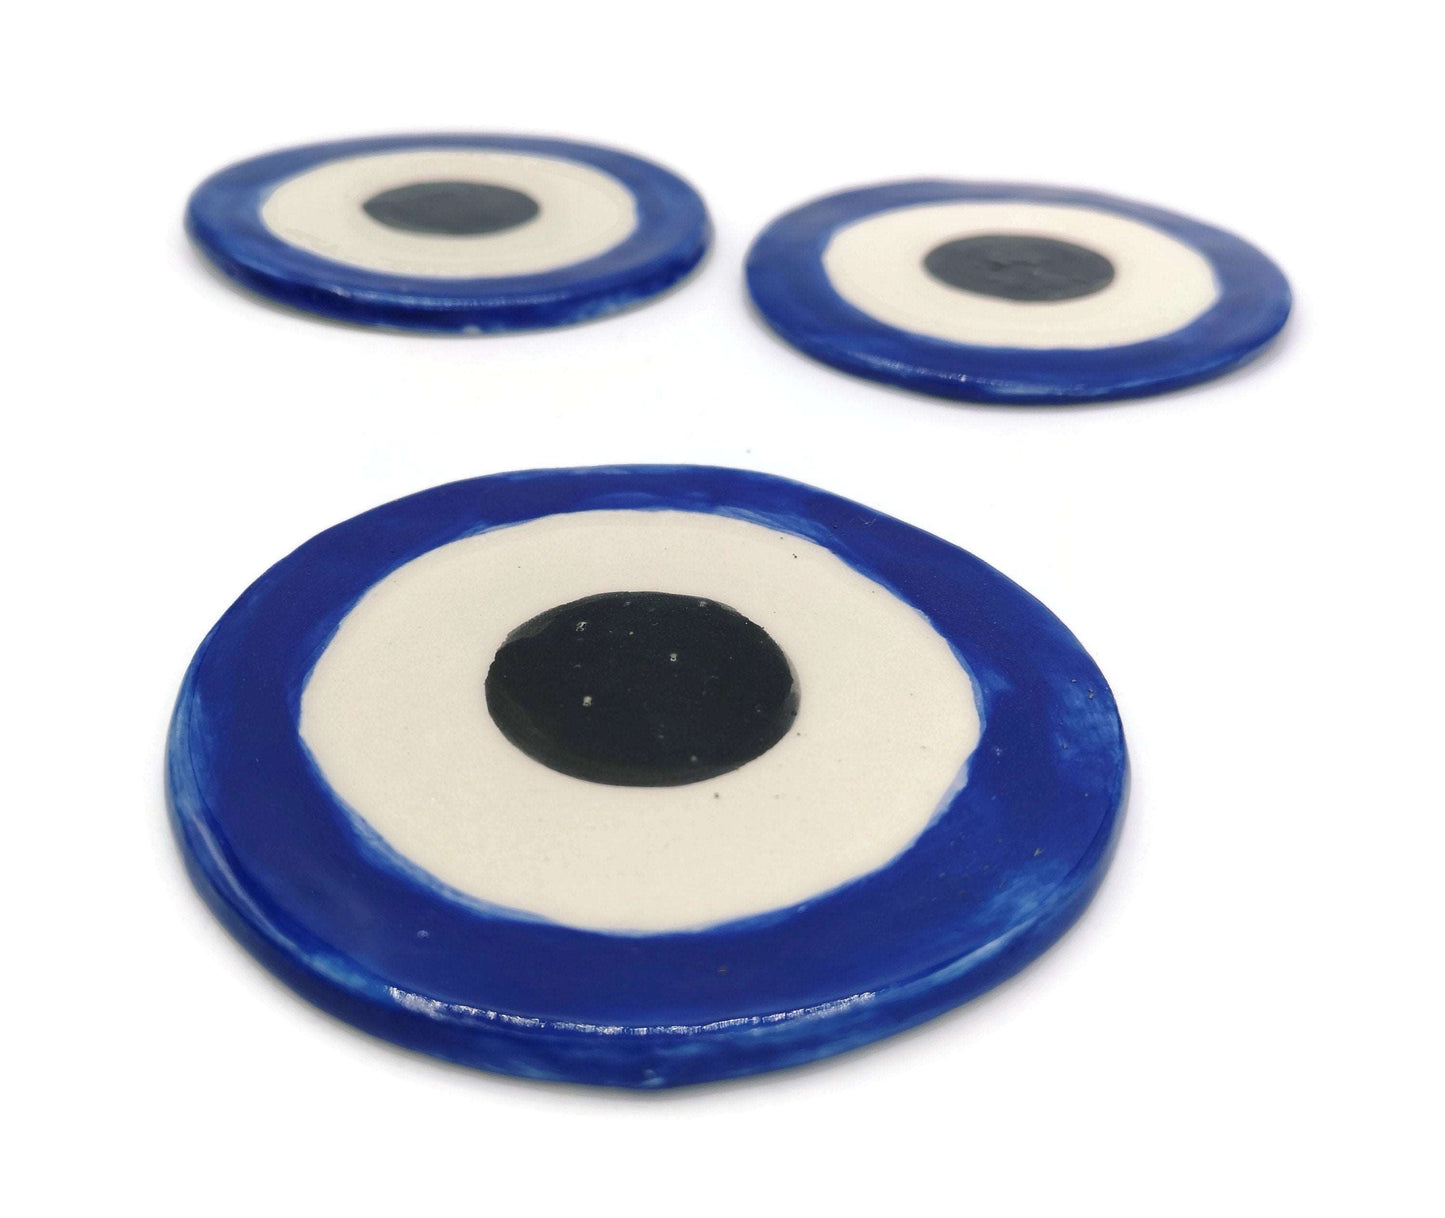 1Pc Handmade Ceramic Blue Evil Eye Coasters For Drinks, Mothers Day Gift For Women, Mom Birthday Gift, Artisan Pottery Best Seller